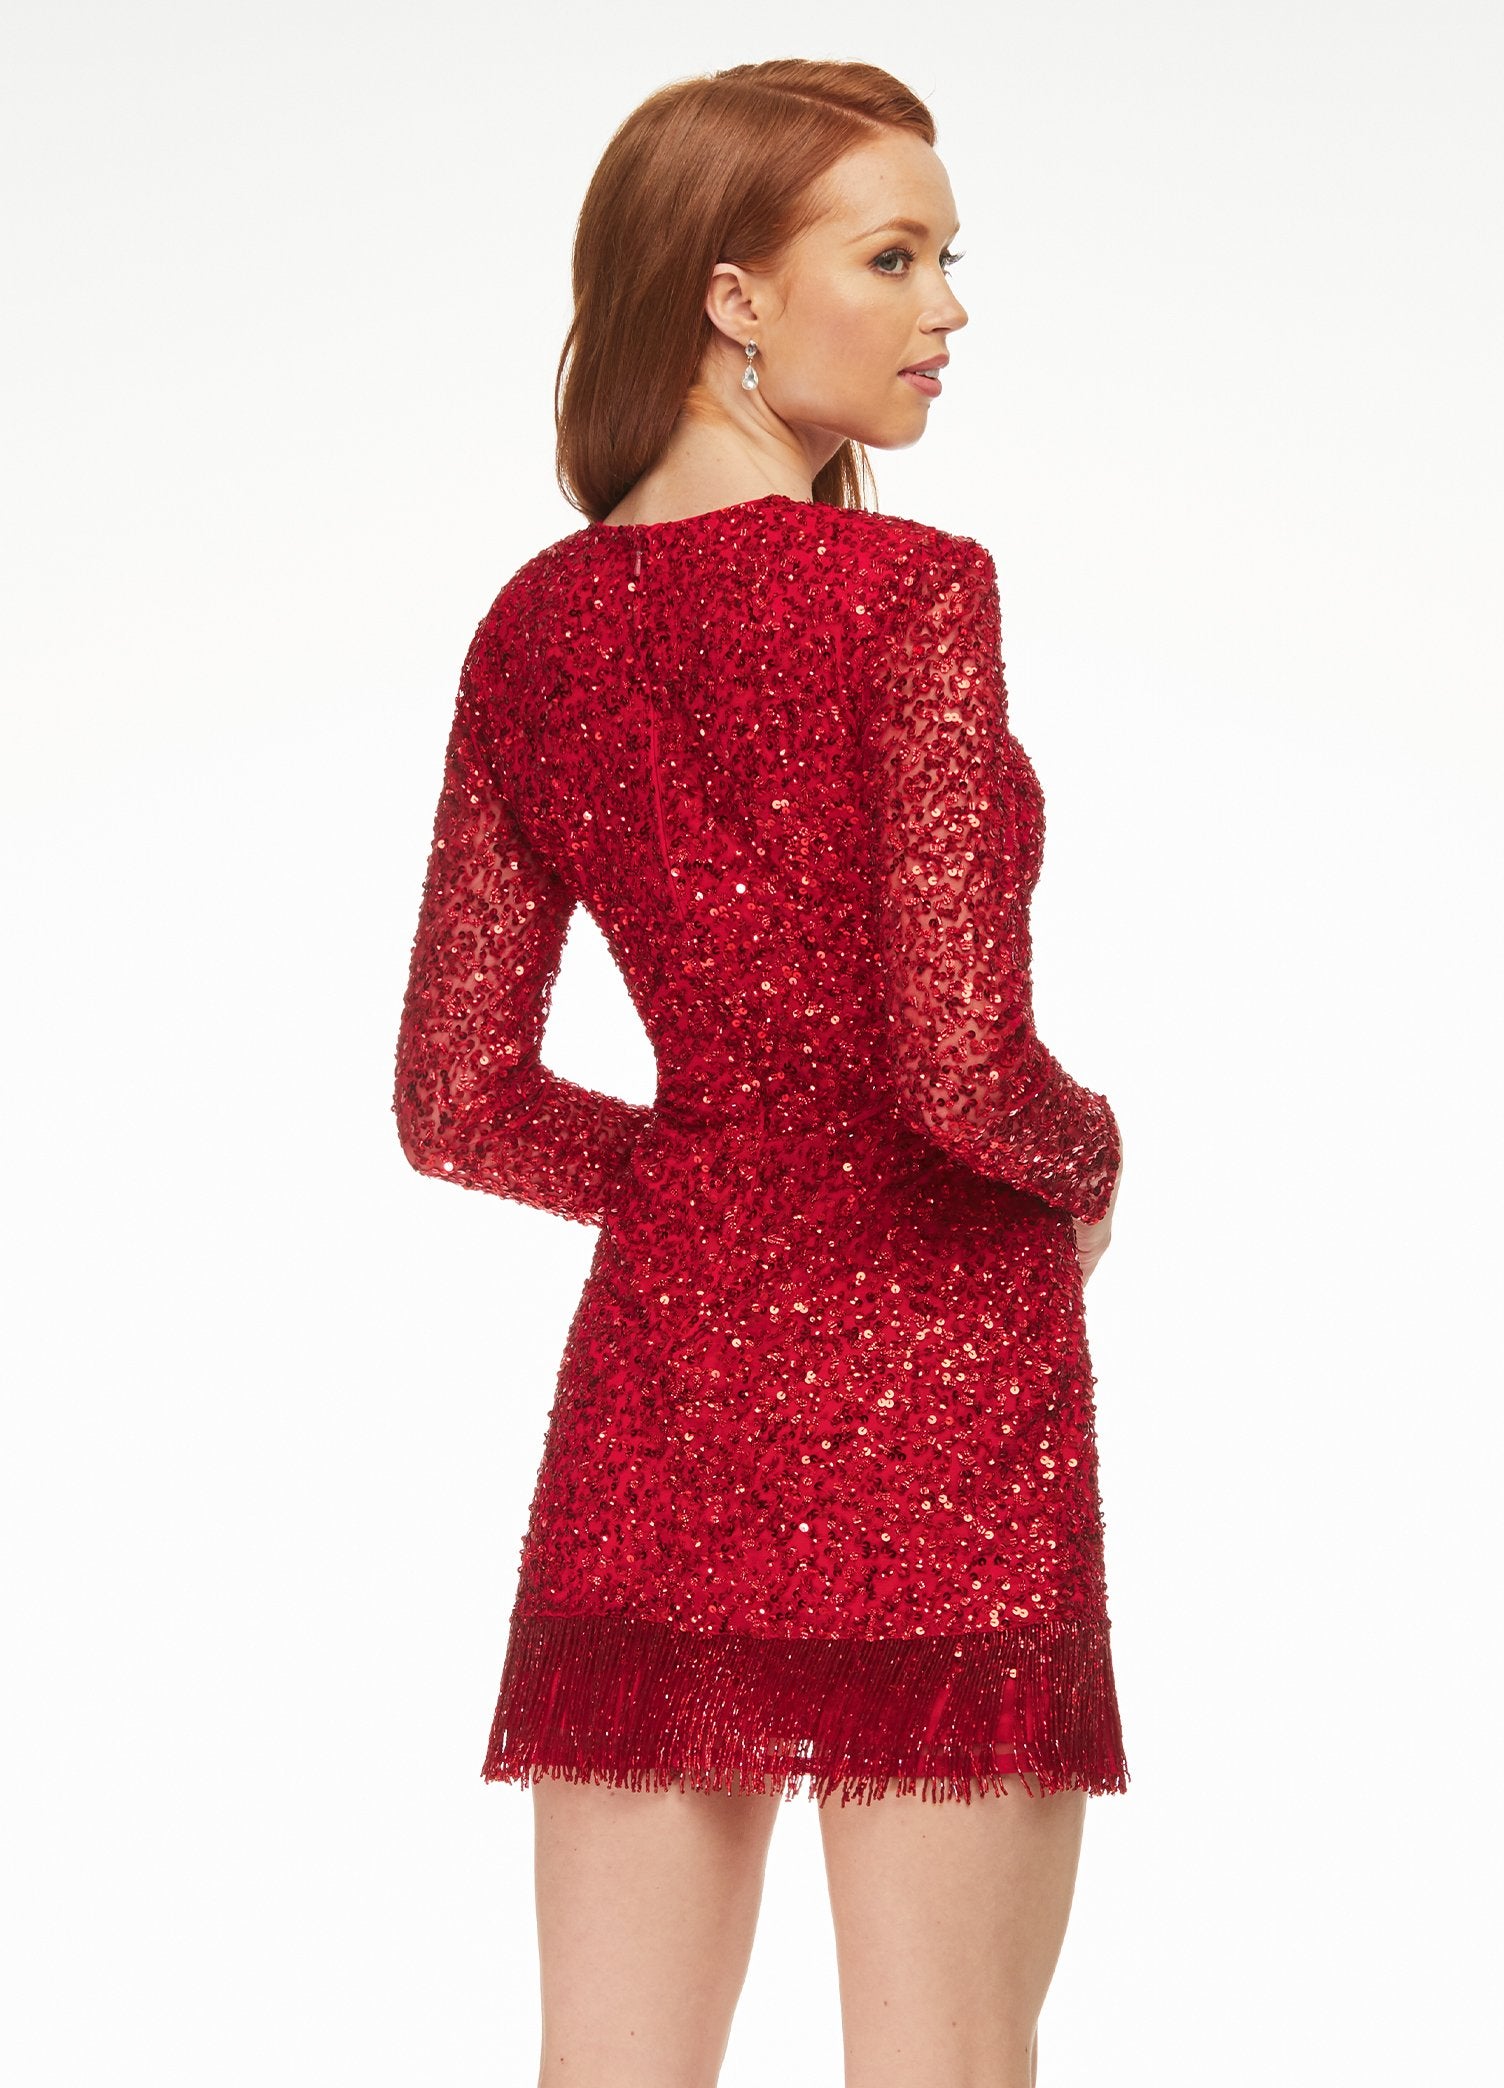 Ashley-Lauren-4438-red-cocktail-dress-back-sequin-embellished-long-sleeves-fringe-slit-and-hem-full-coverage-back